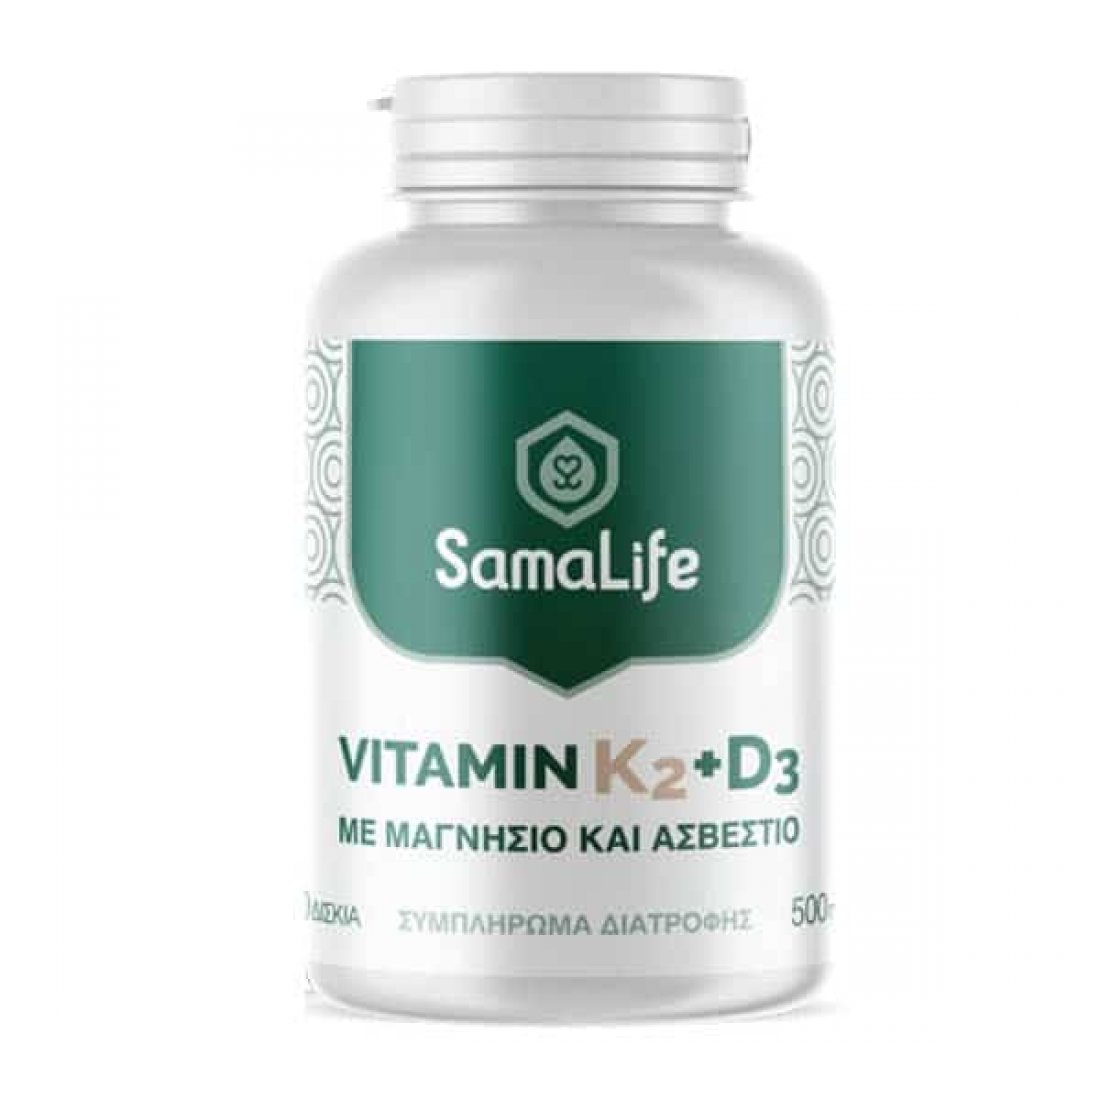 samalife-vitanin-k2+d3